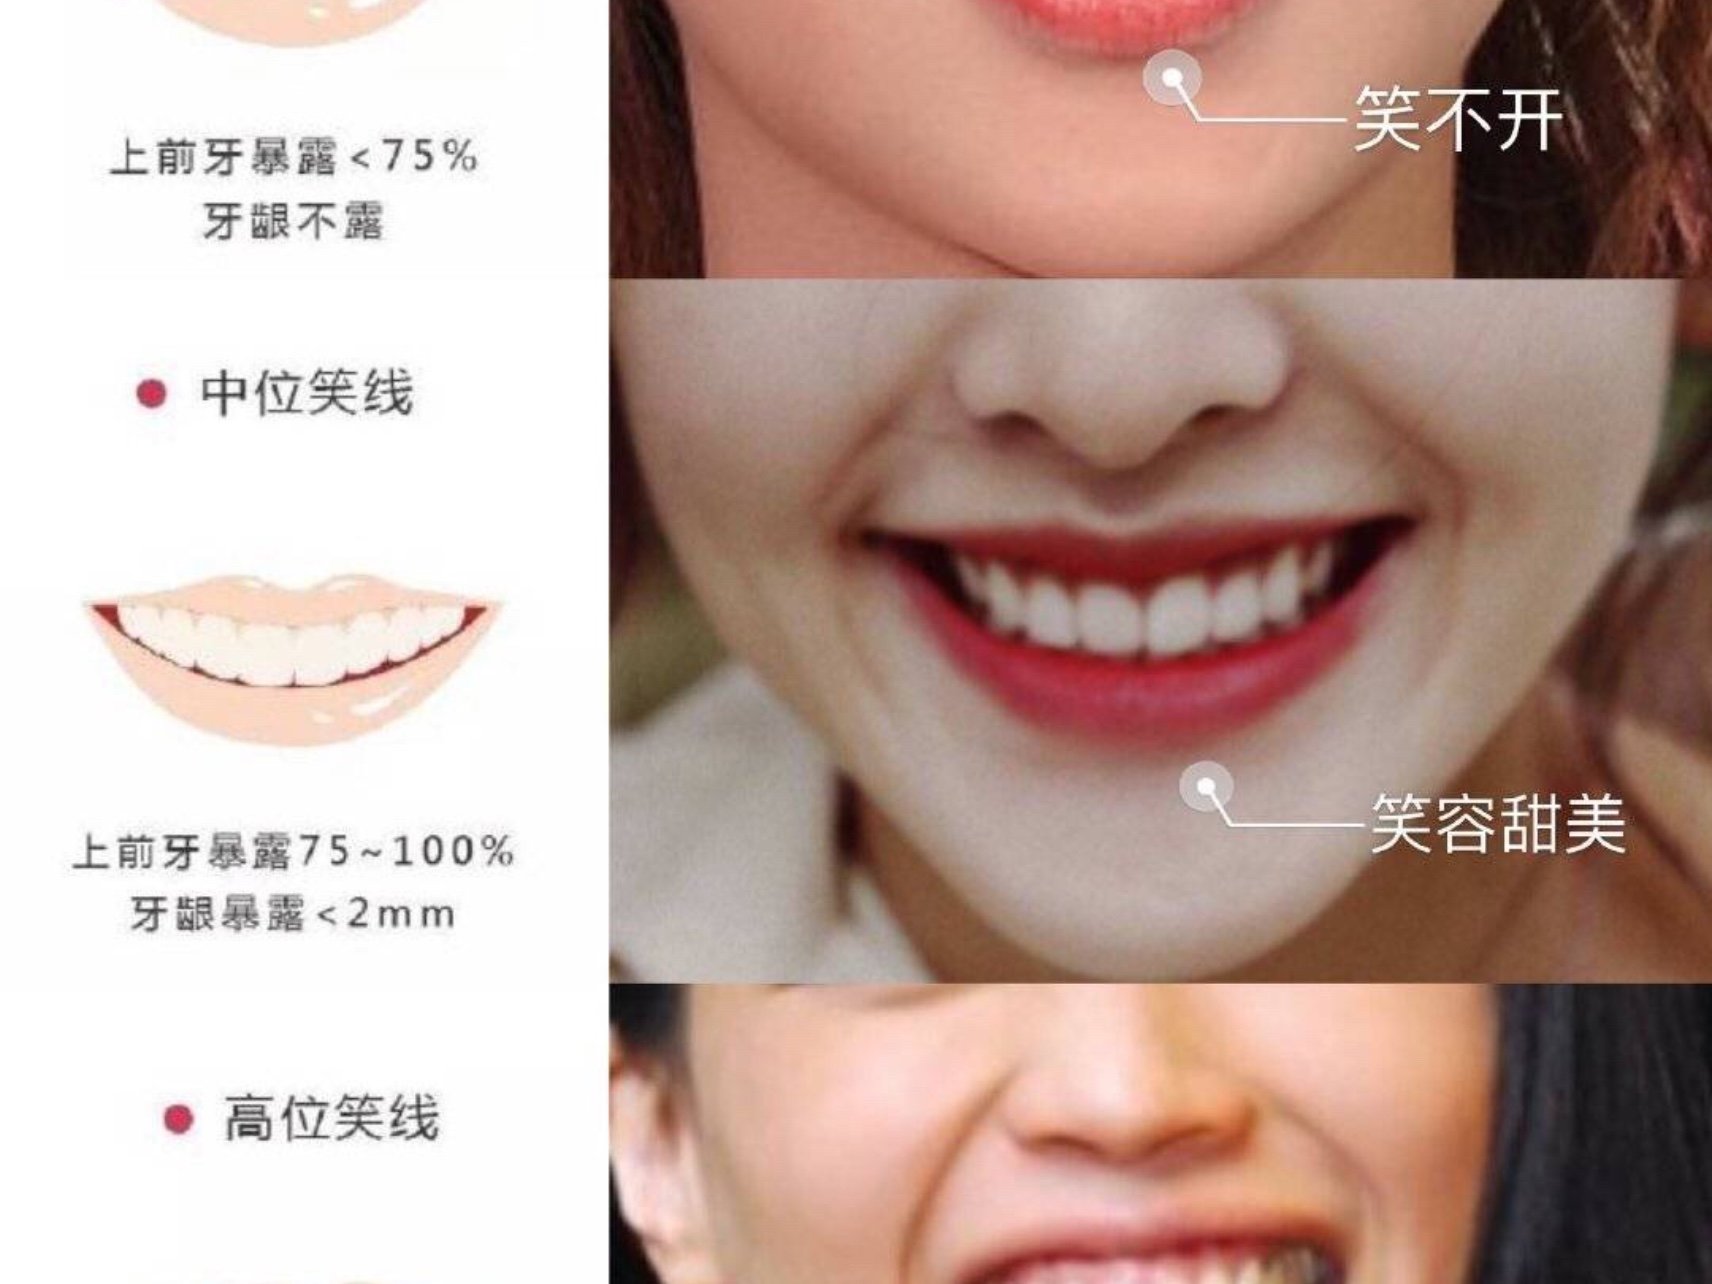 最近做了一些关于微笑线的功课,其实牙齿,牙弓宽窄